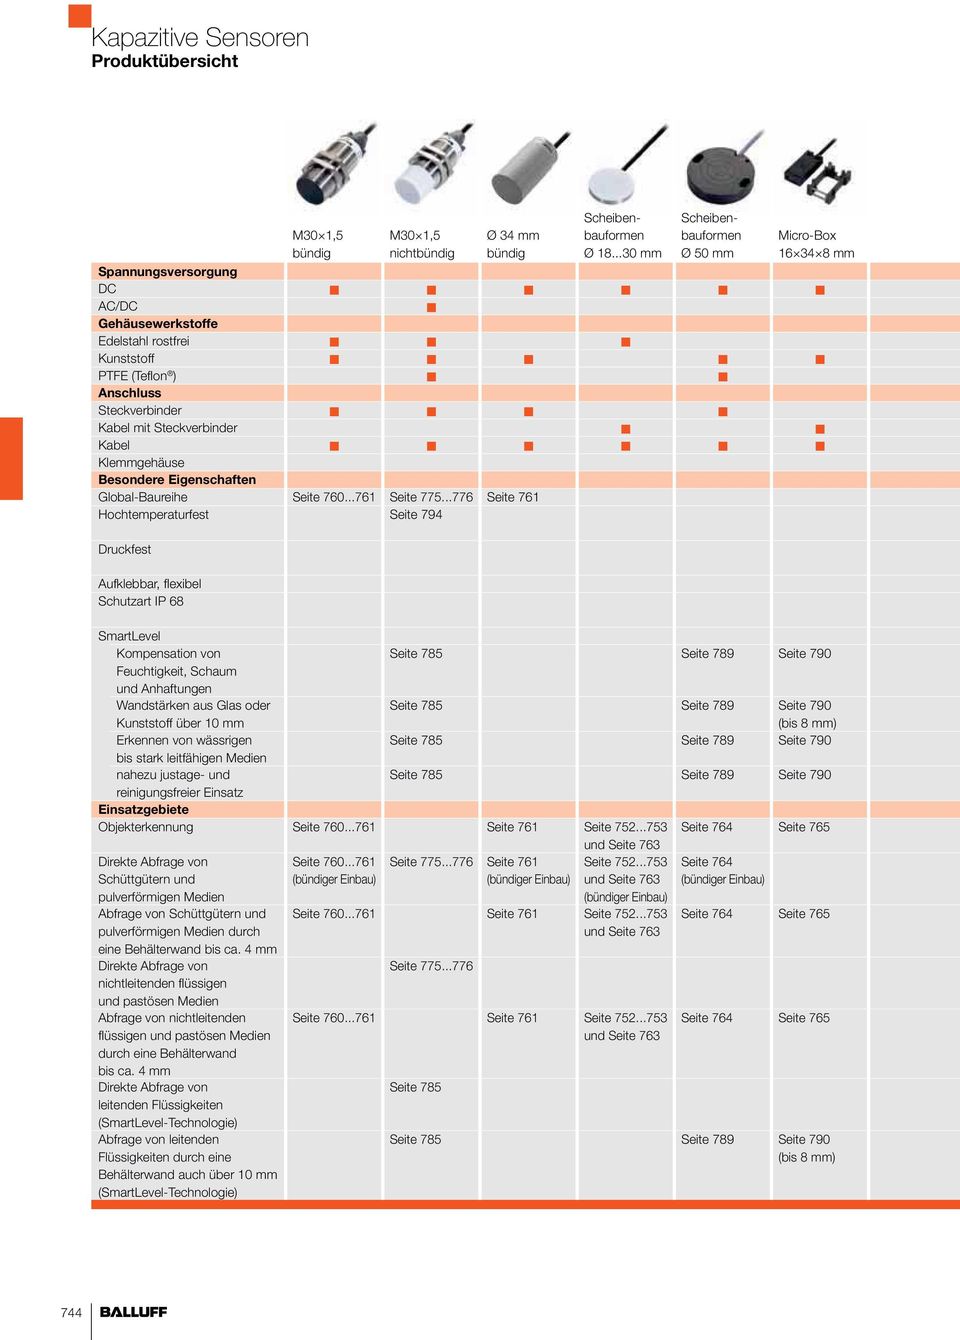 Kabel Klemmgehäuse Besondere Eigenschaften Global-Baureihe Seite 760...761 Seite 775.